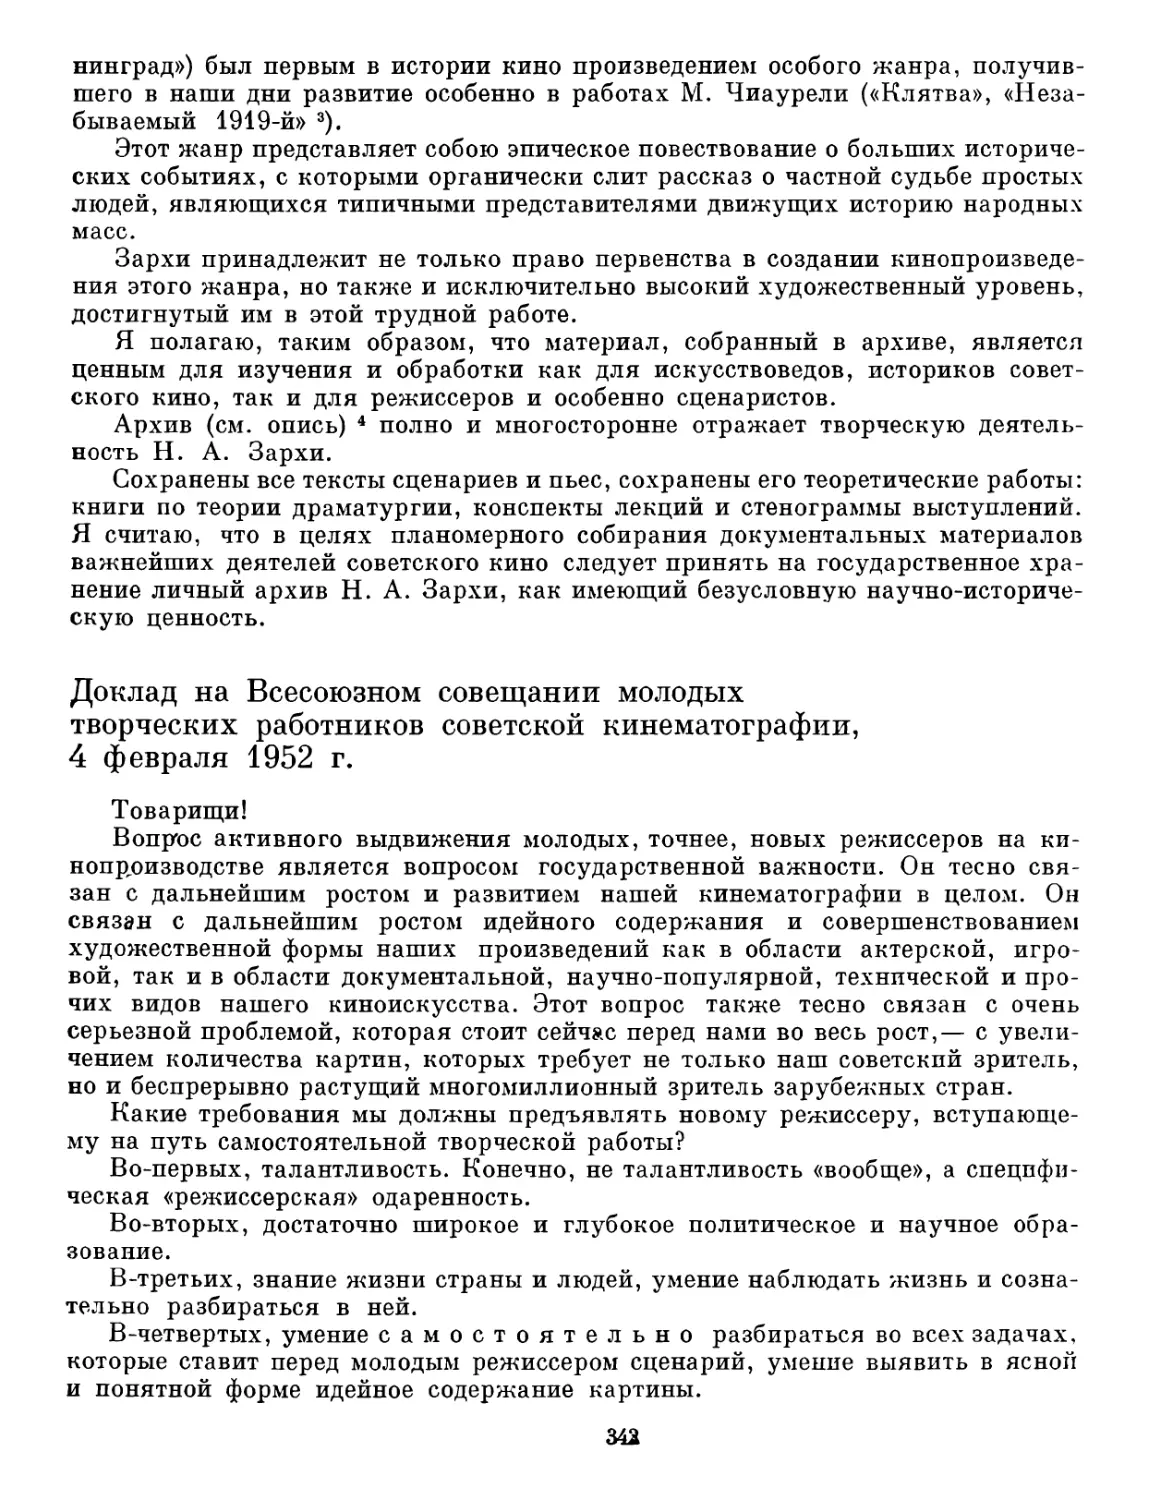 Доклад на Всесоюзном совещании молодых творческих работников советской кинематографии, 4 февраля 1952 г.